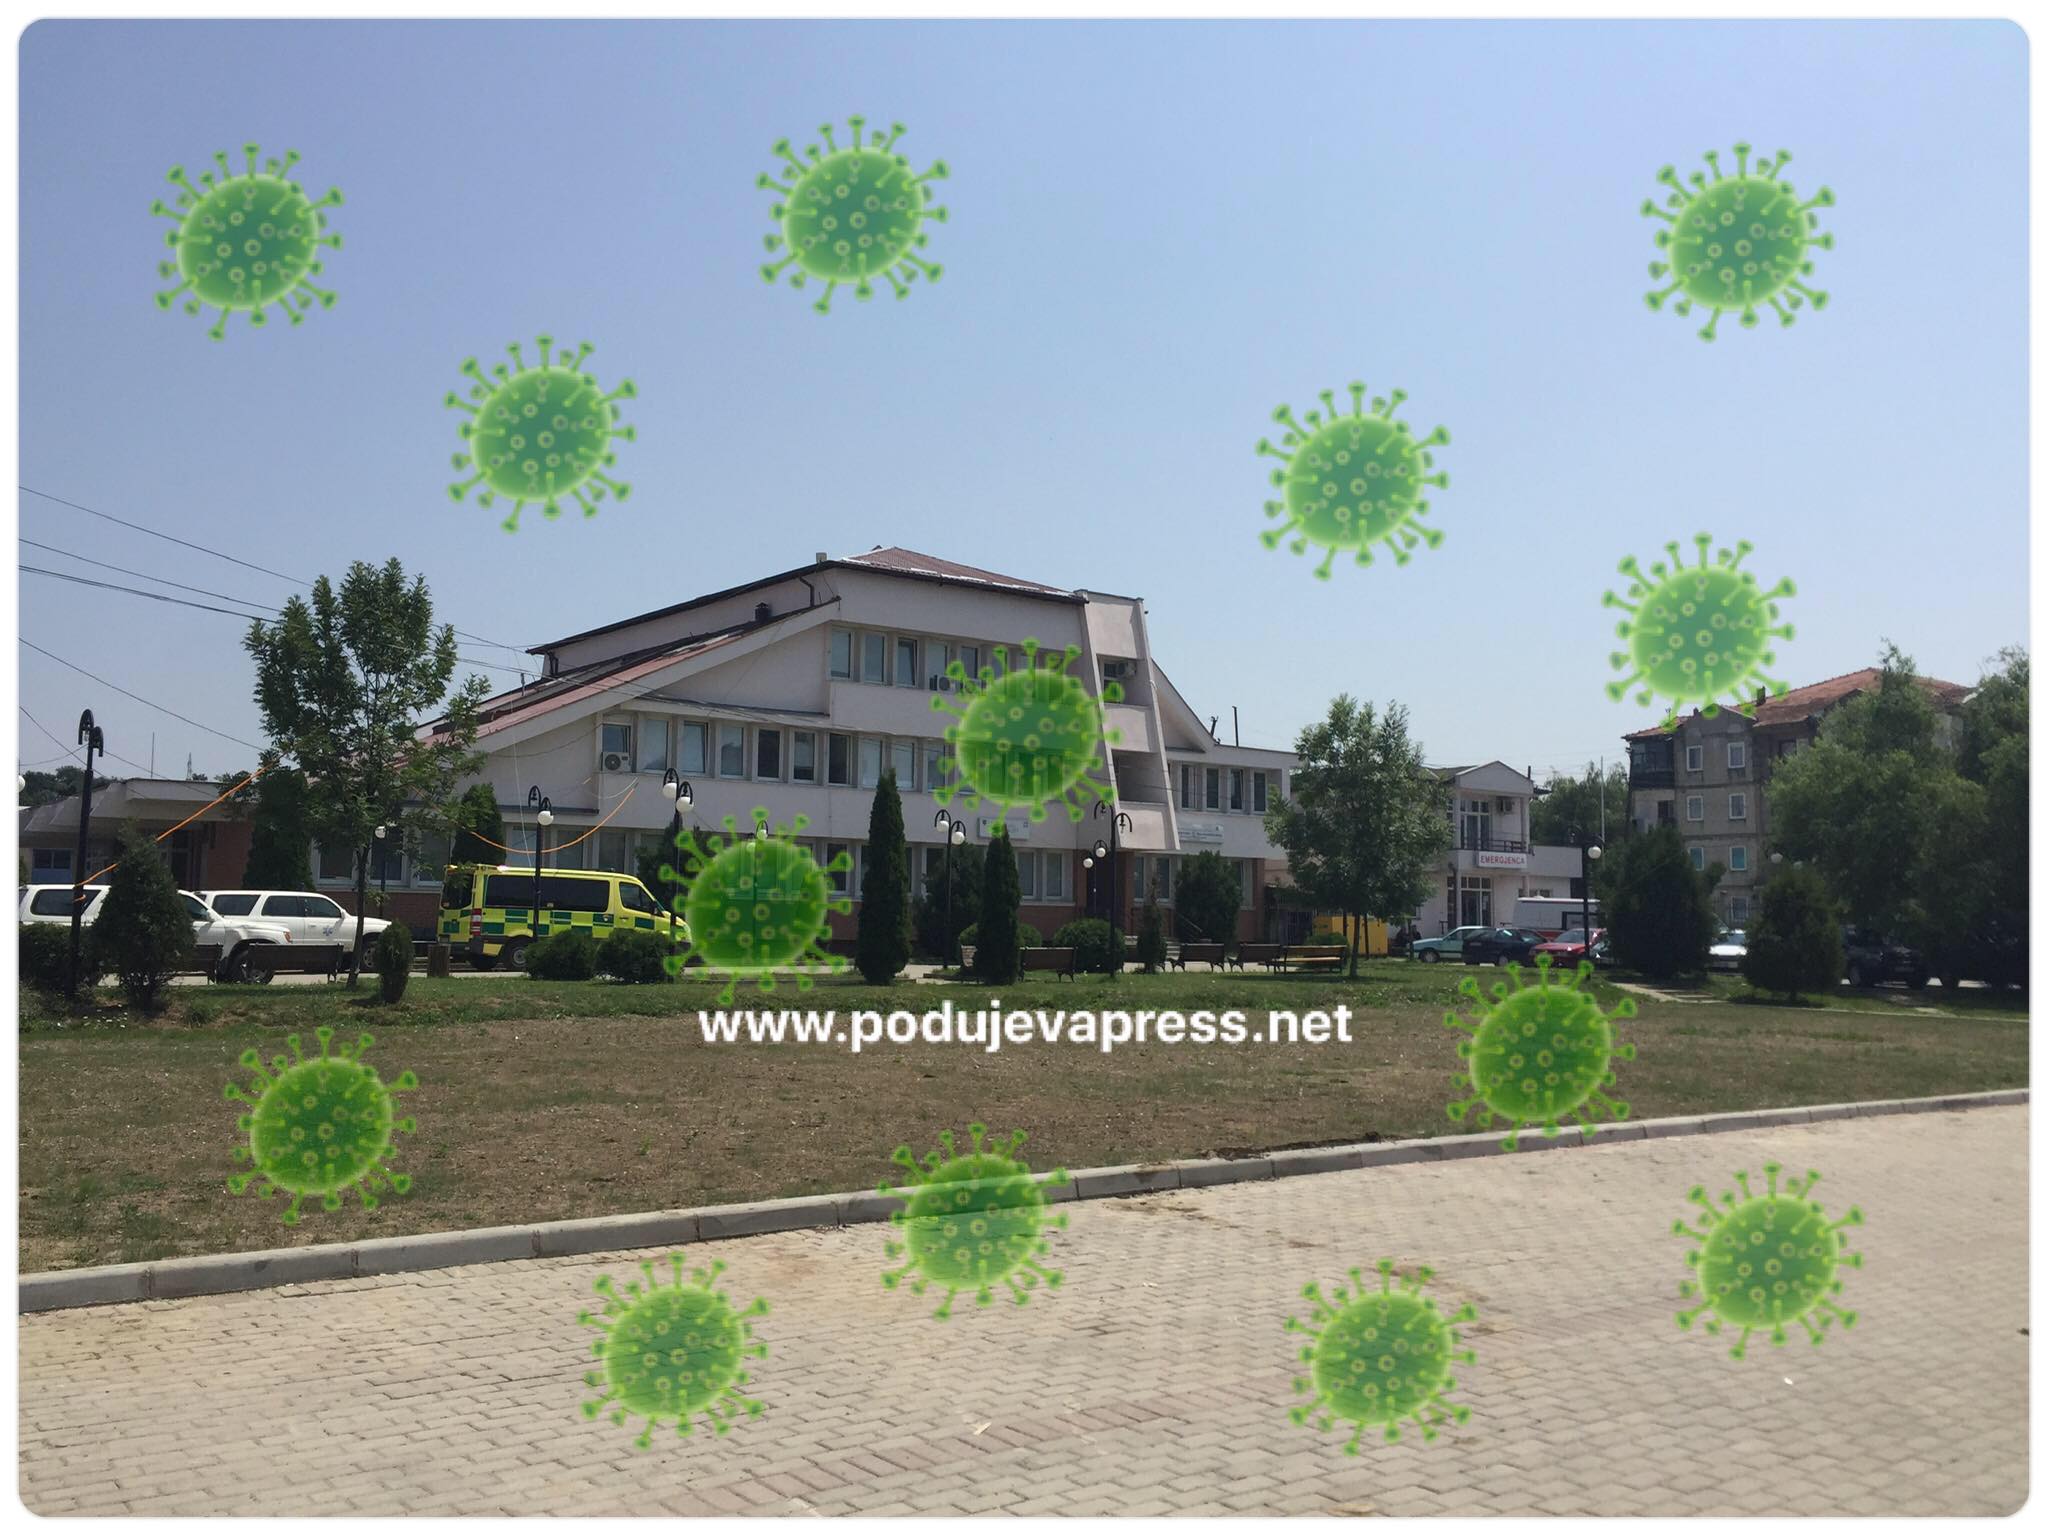  72 të infektuar me COVID një i vdekur dhe 224 të shëruar në Podujevë